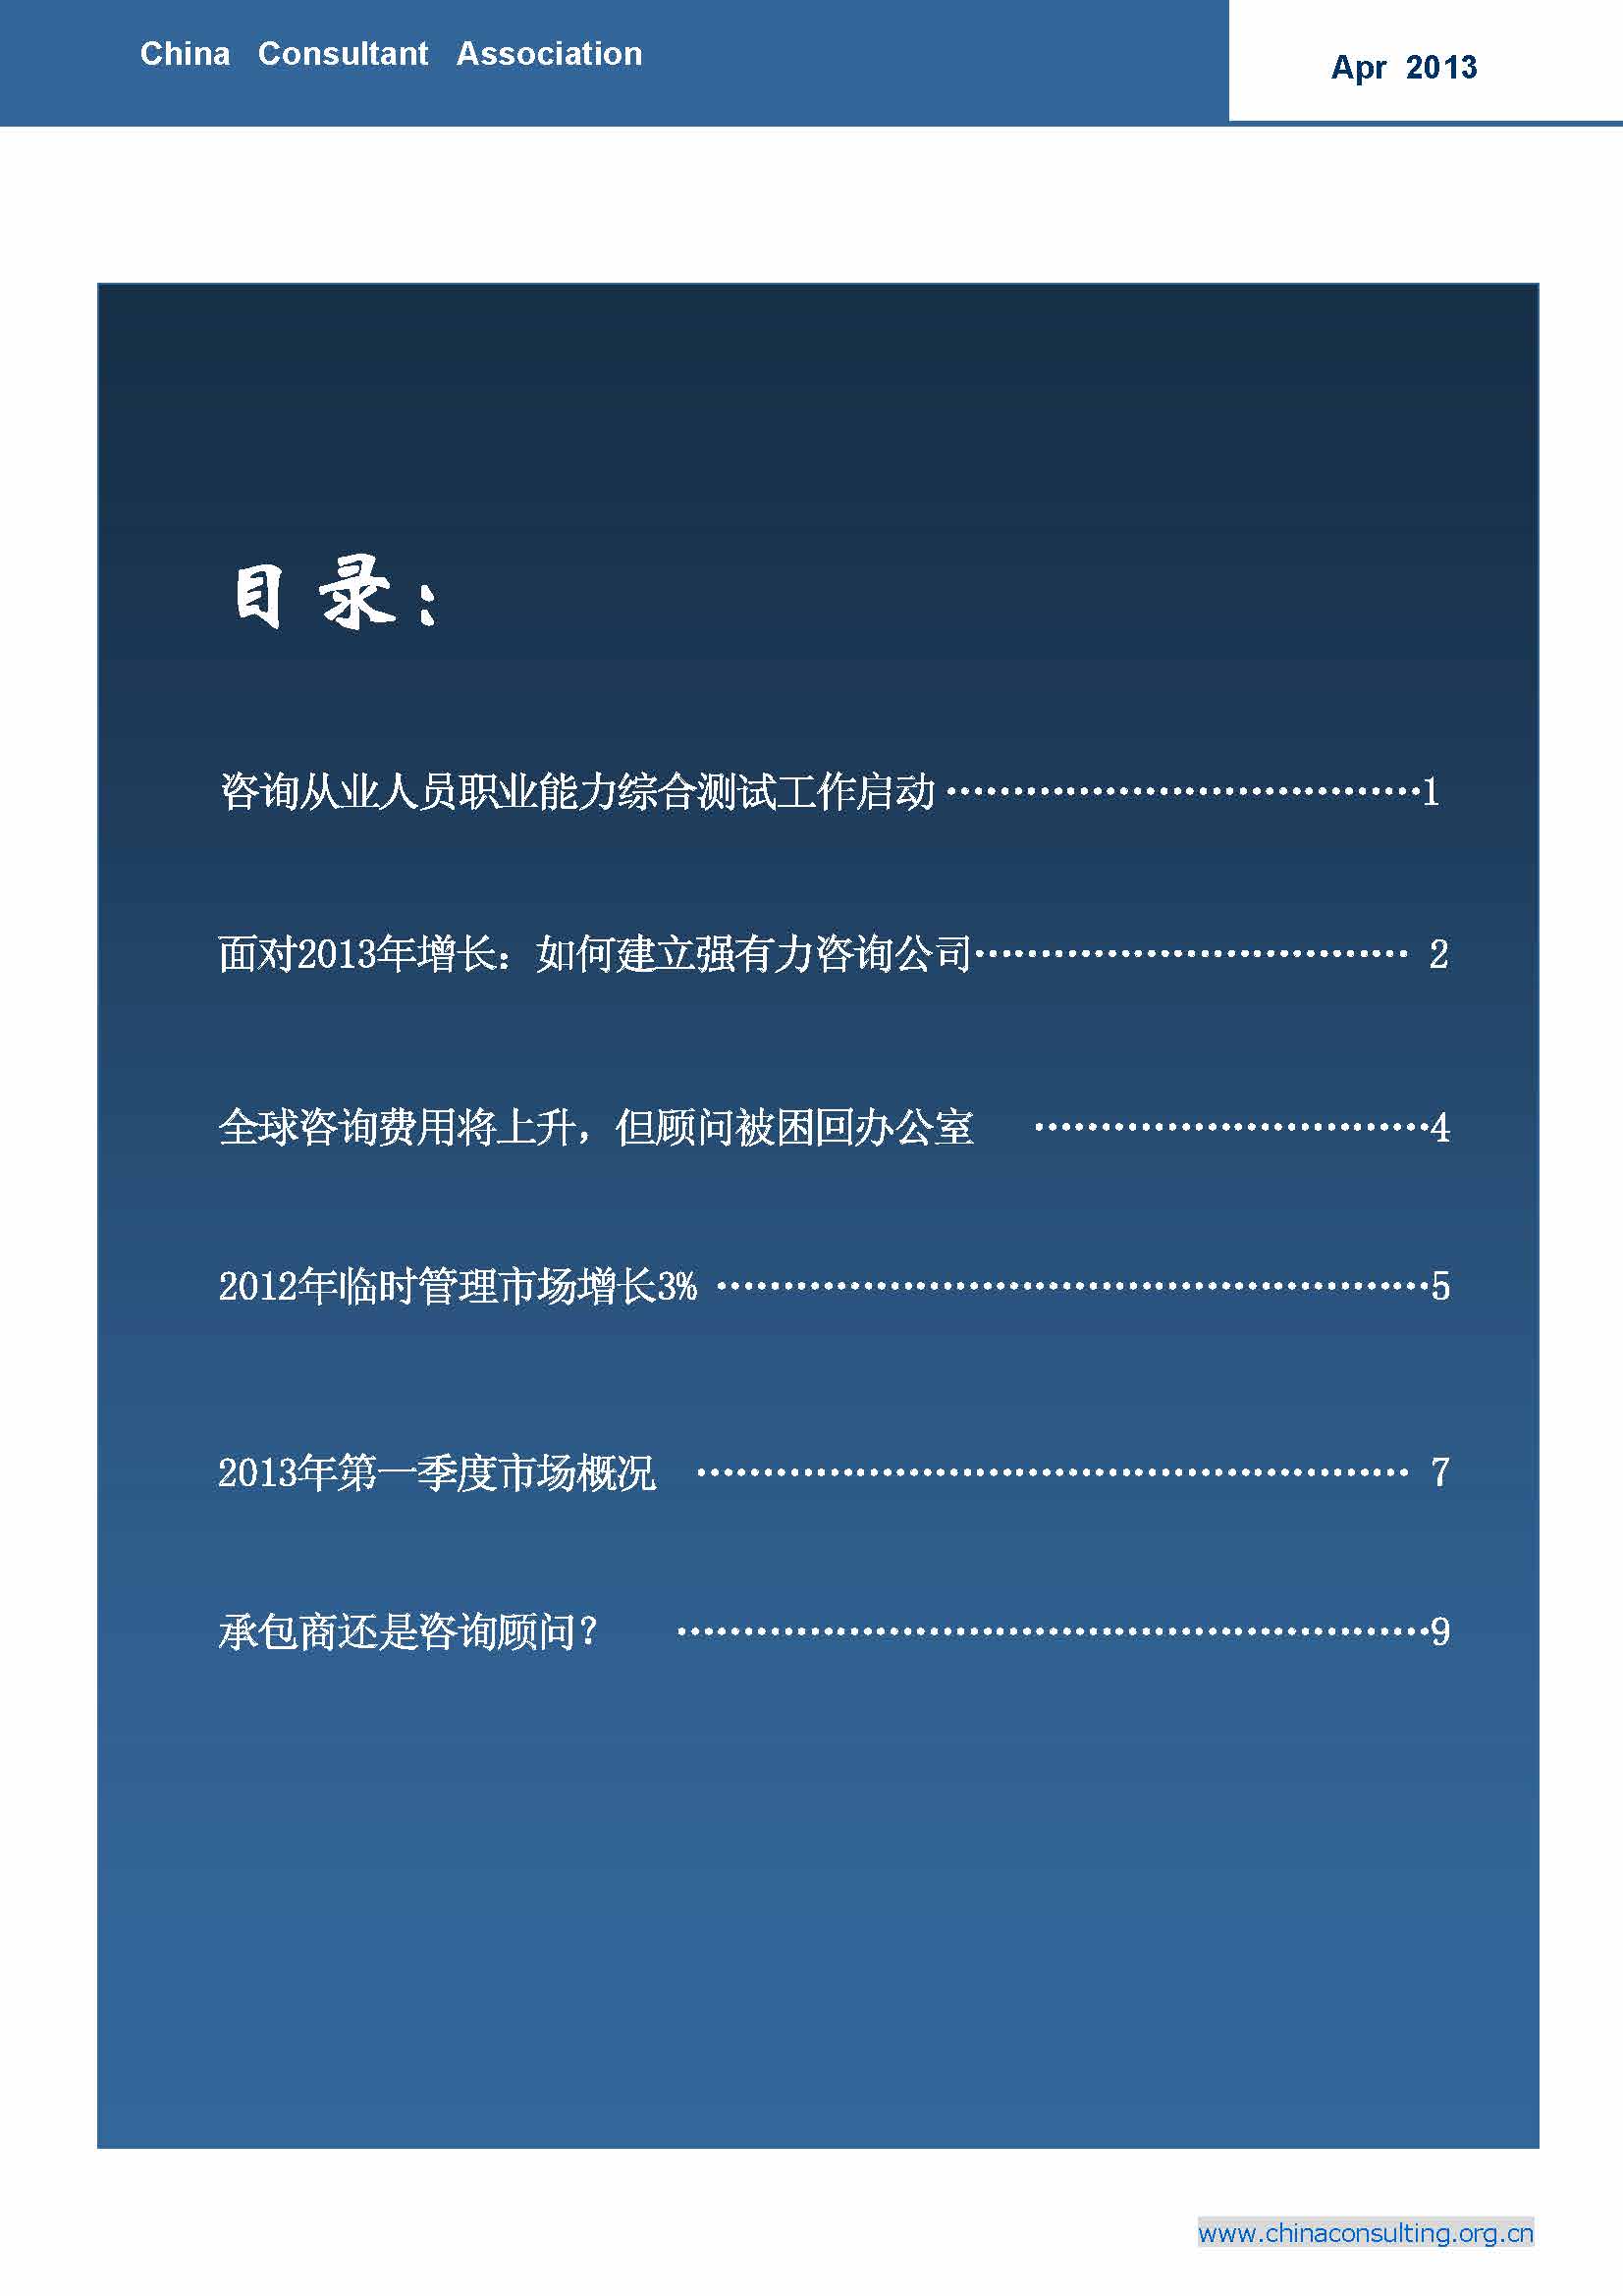 12中国科技咨询协会国际快讯（第十二期）_页面_02.jpg